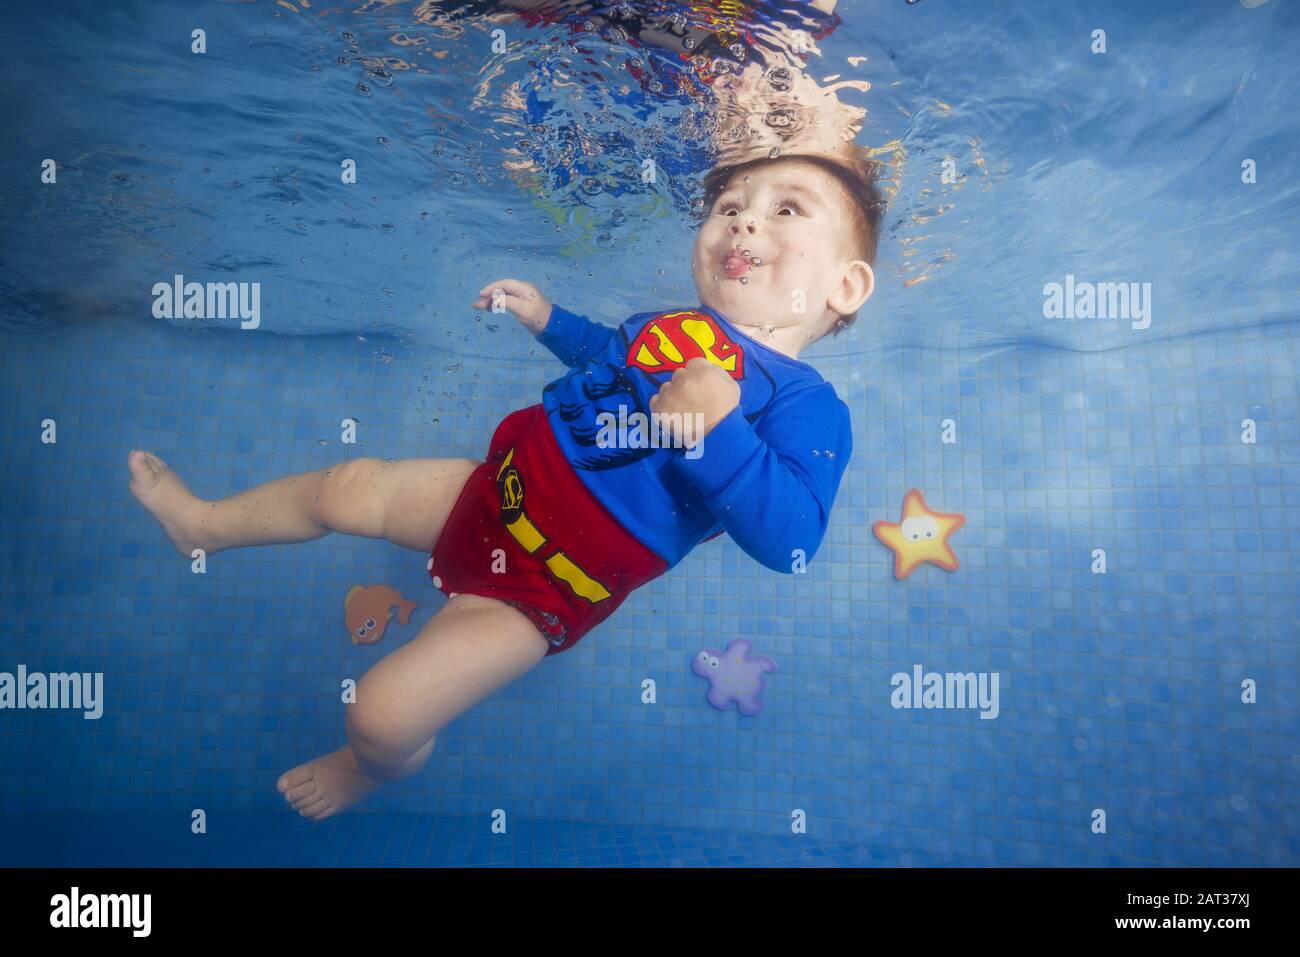 Kleiner Junge in einem Superman-Kostüm taucht unter Wasser im Pool  Stockfotografie - Alamy